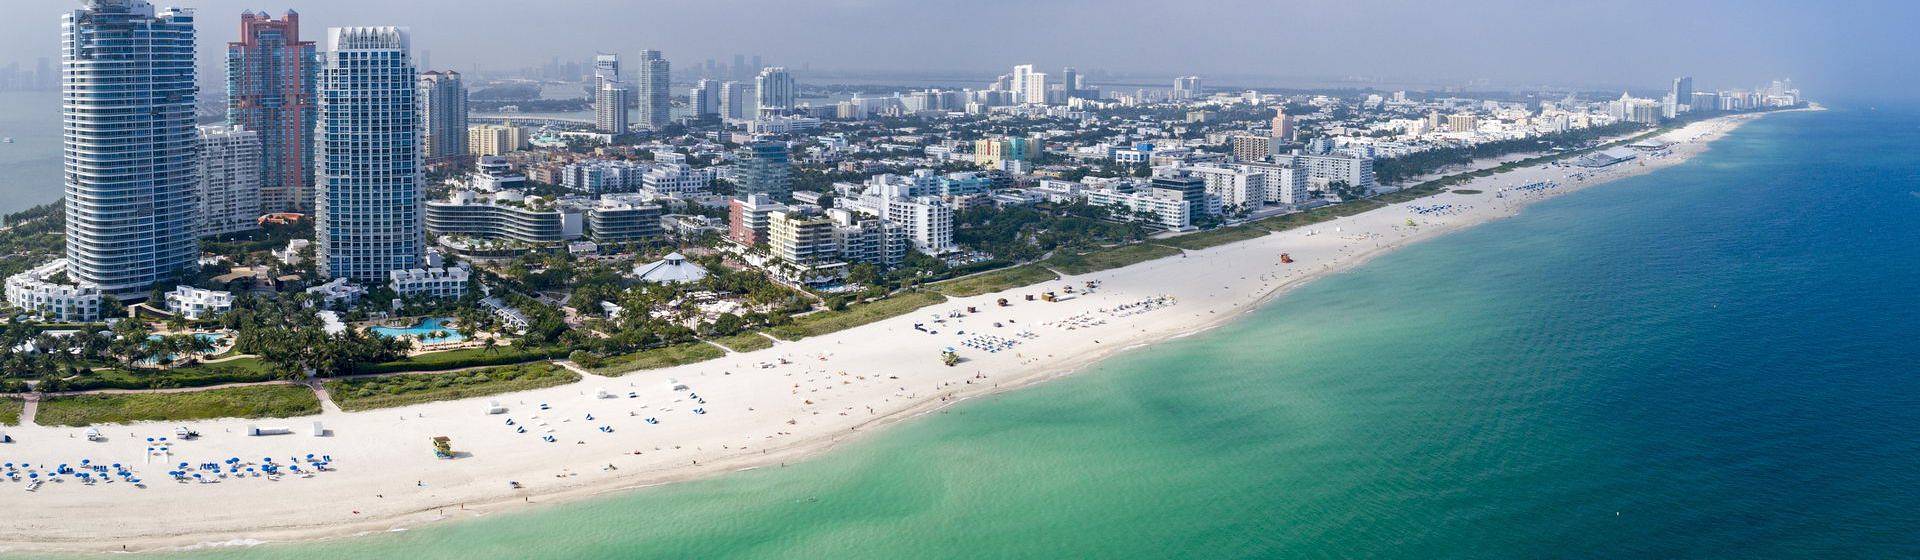 Holidays to Miami Image